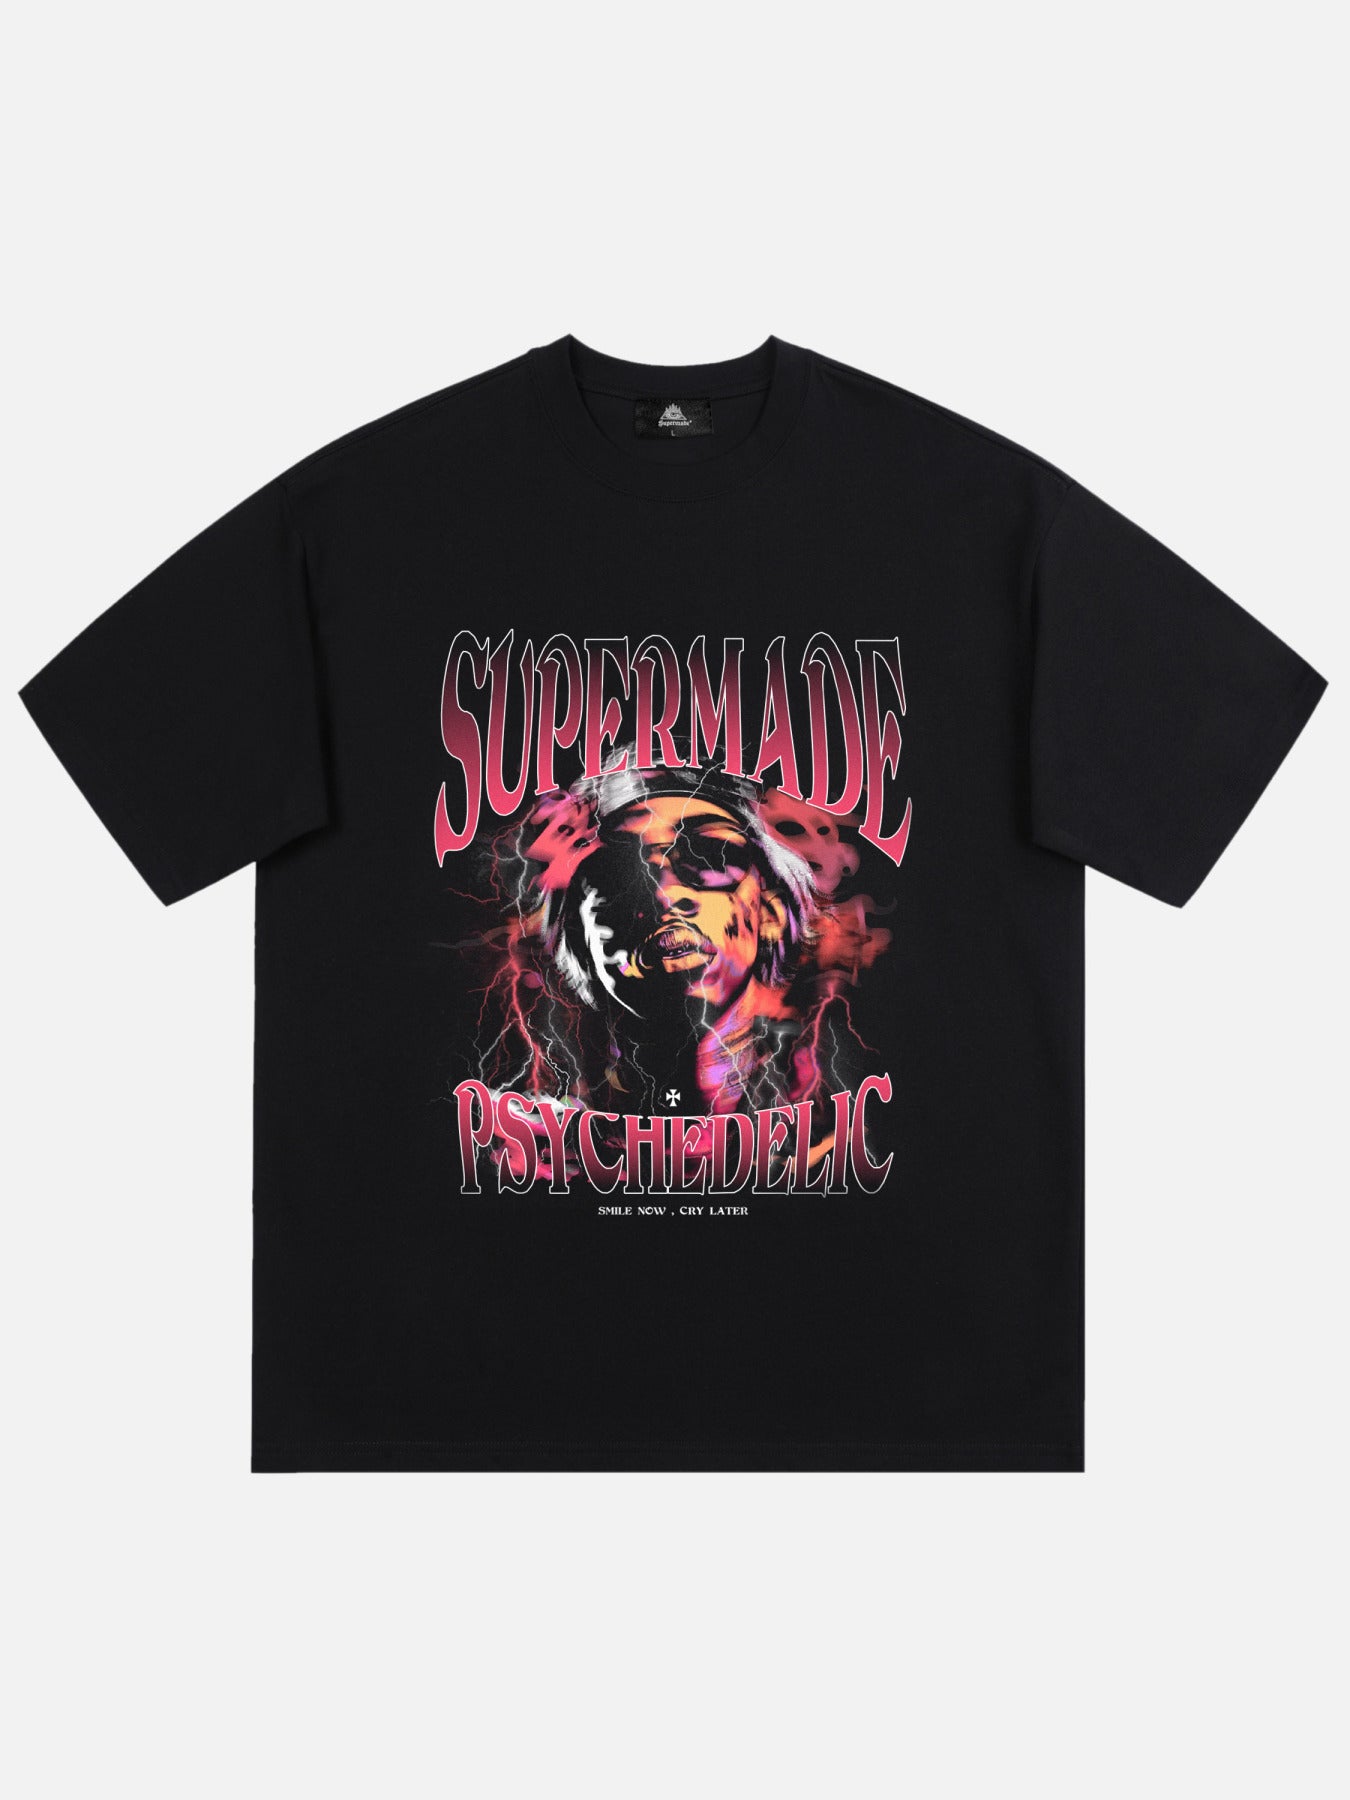 Thesupermade Retro Hip Hop Print T-shirt